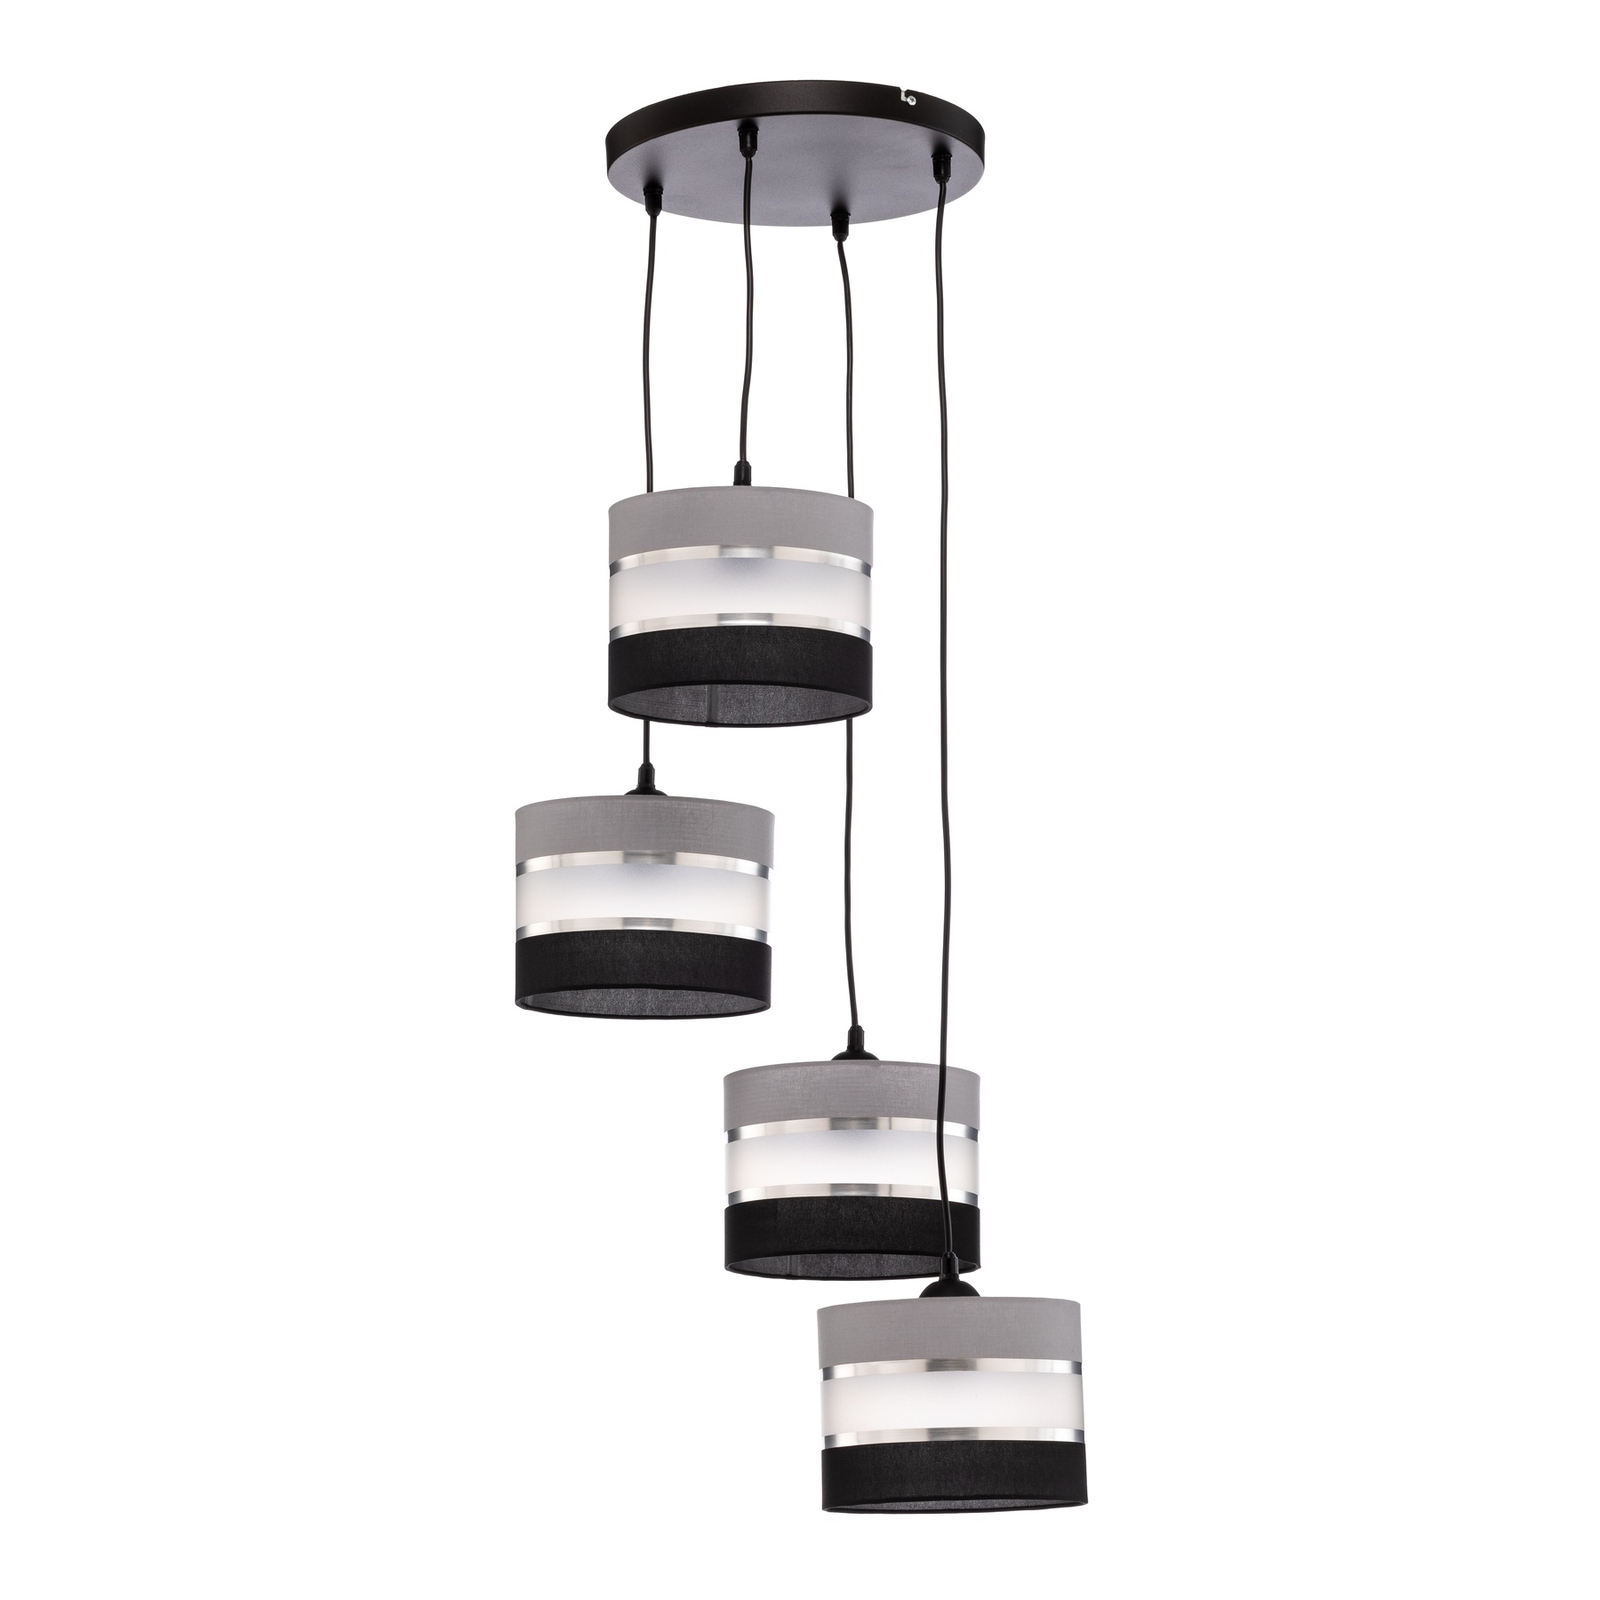 Suspension Helen ronde gris-noir-argenté 4 lampes